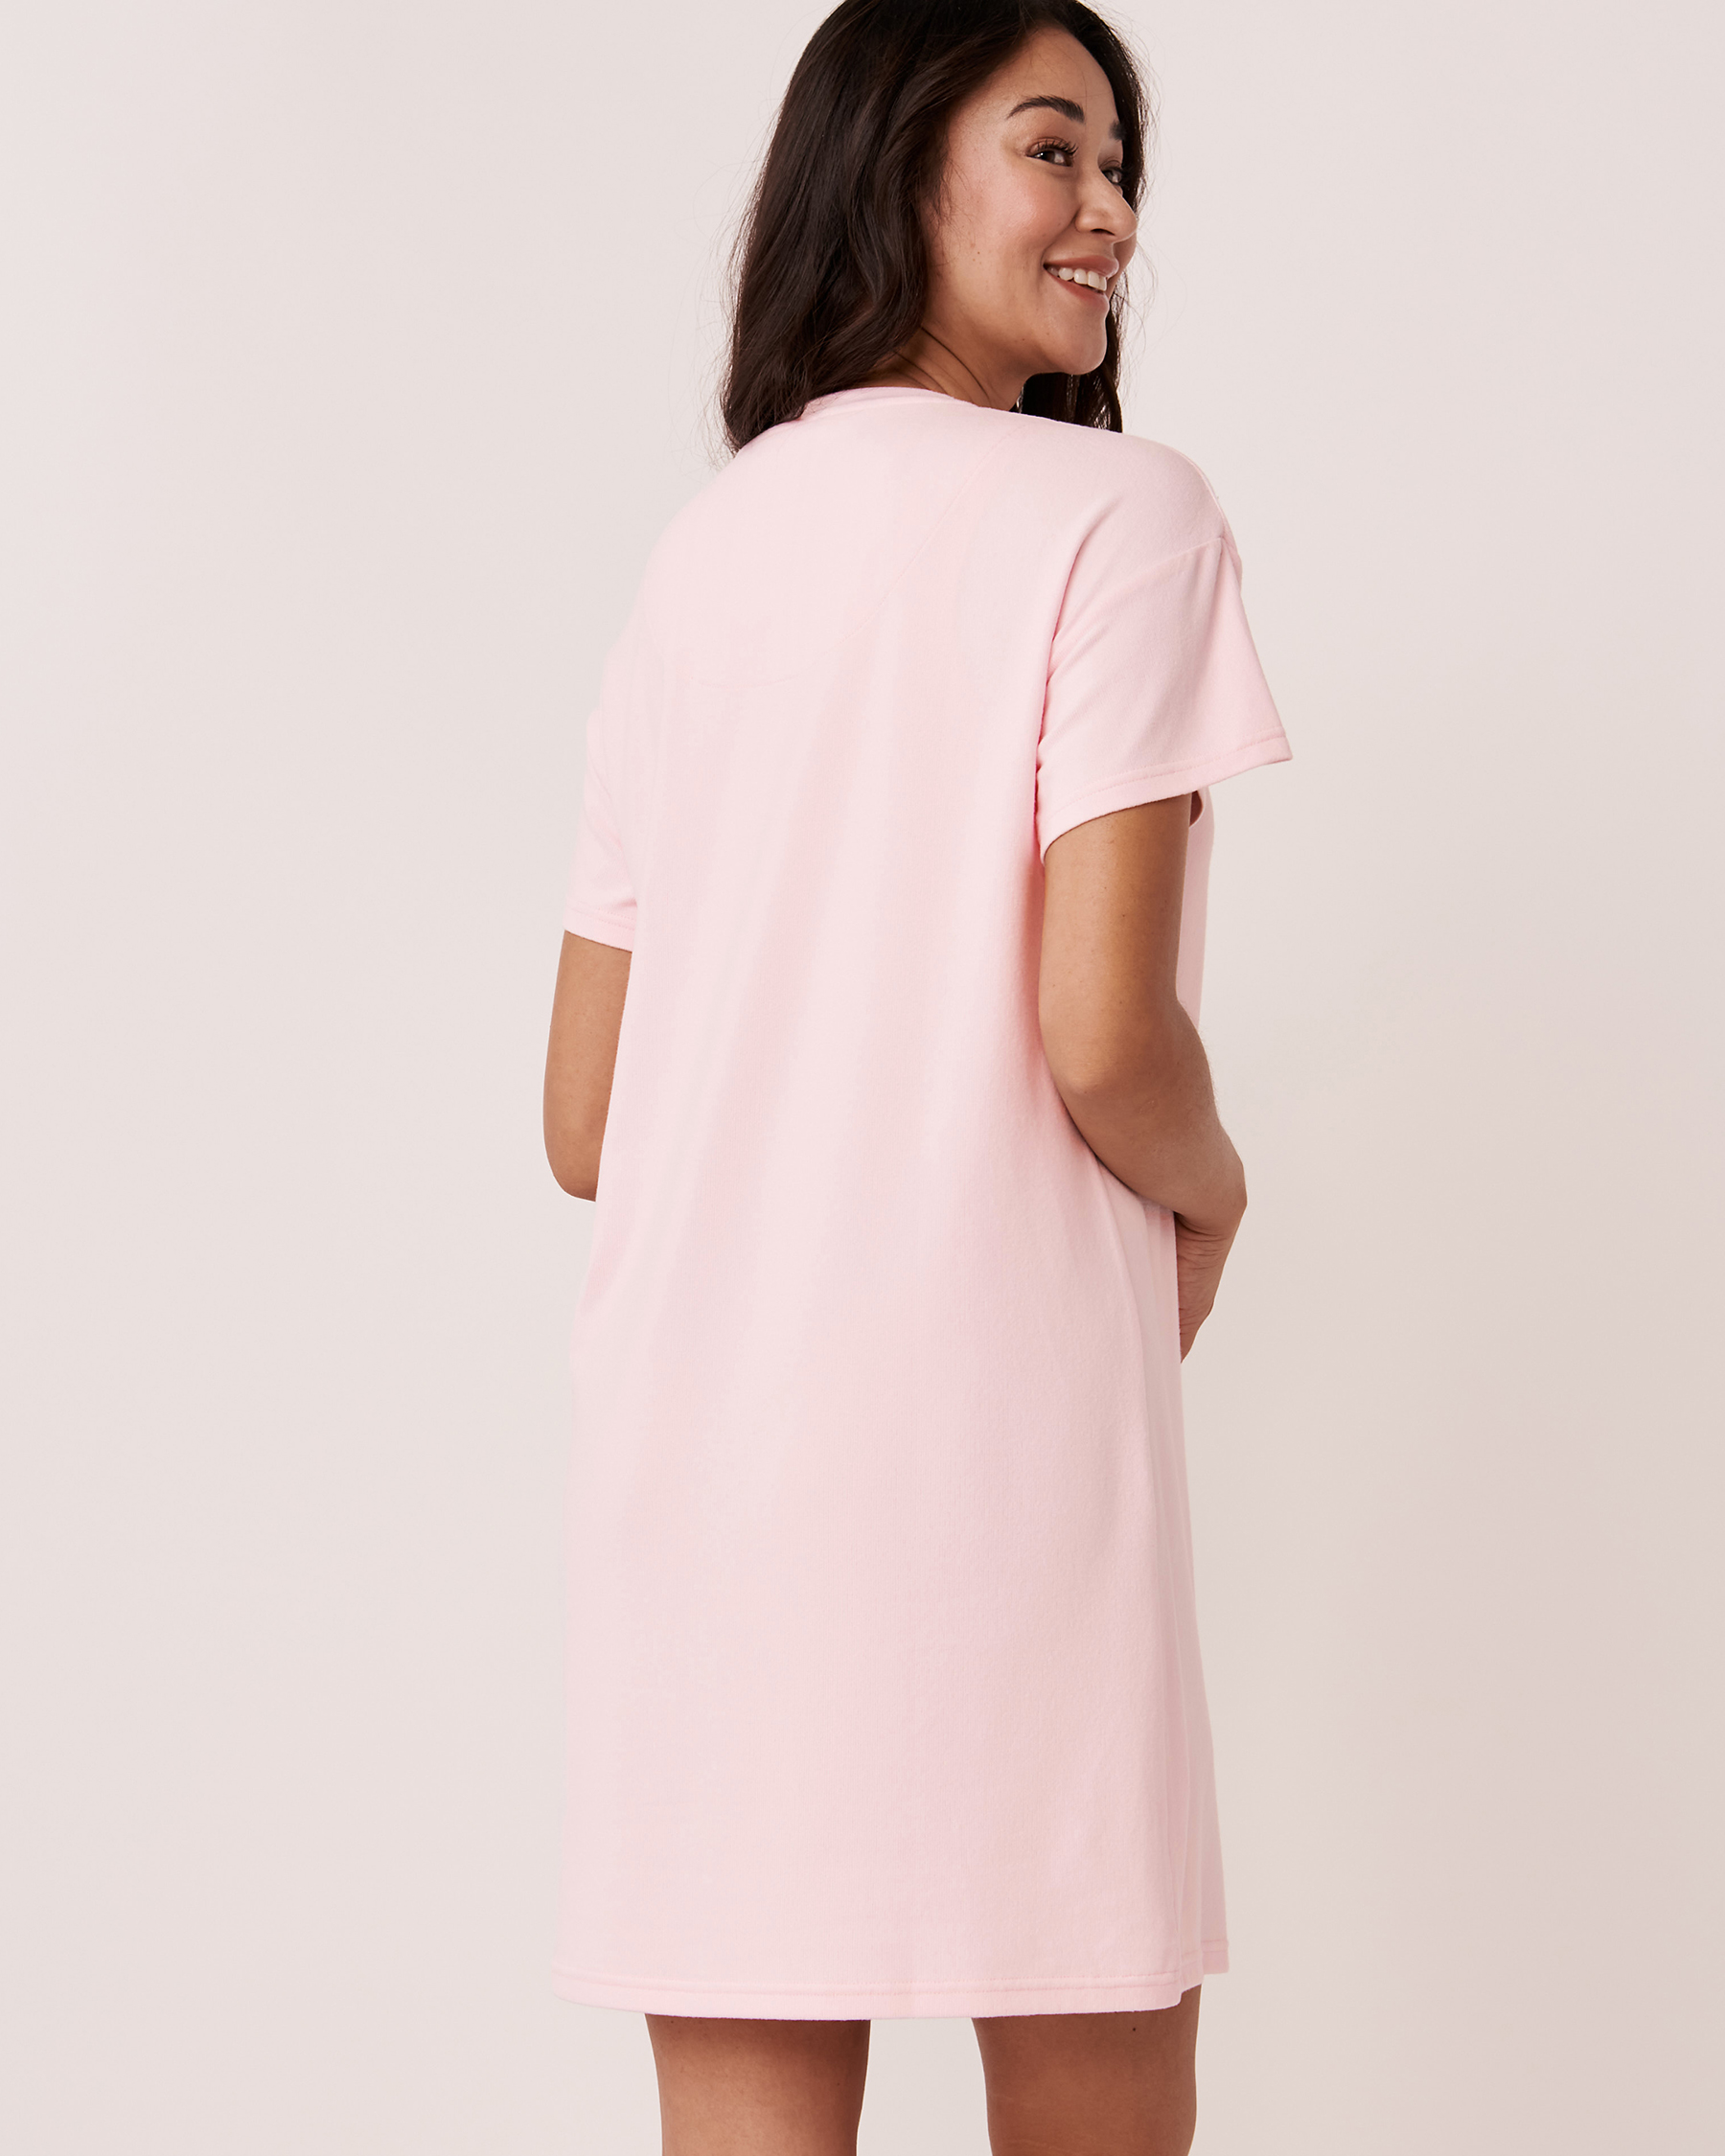 LA VIE EN ROSE Recycled Fibers Short Sleeve Sleepshirt Ballerina pink 40500241 - View3